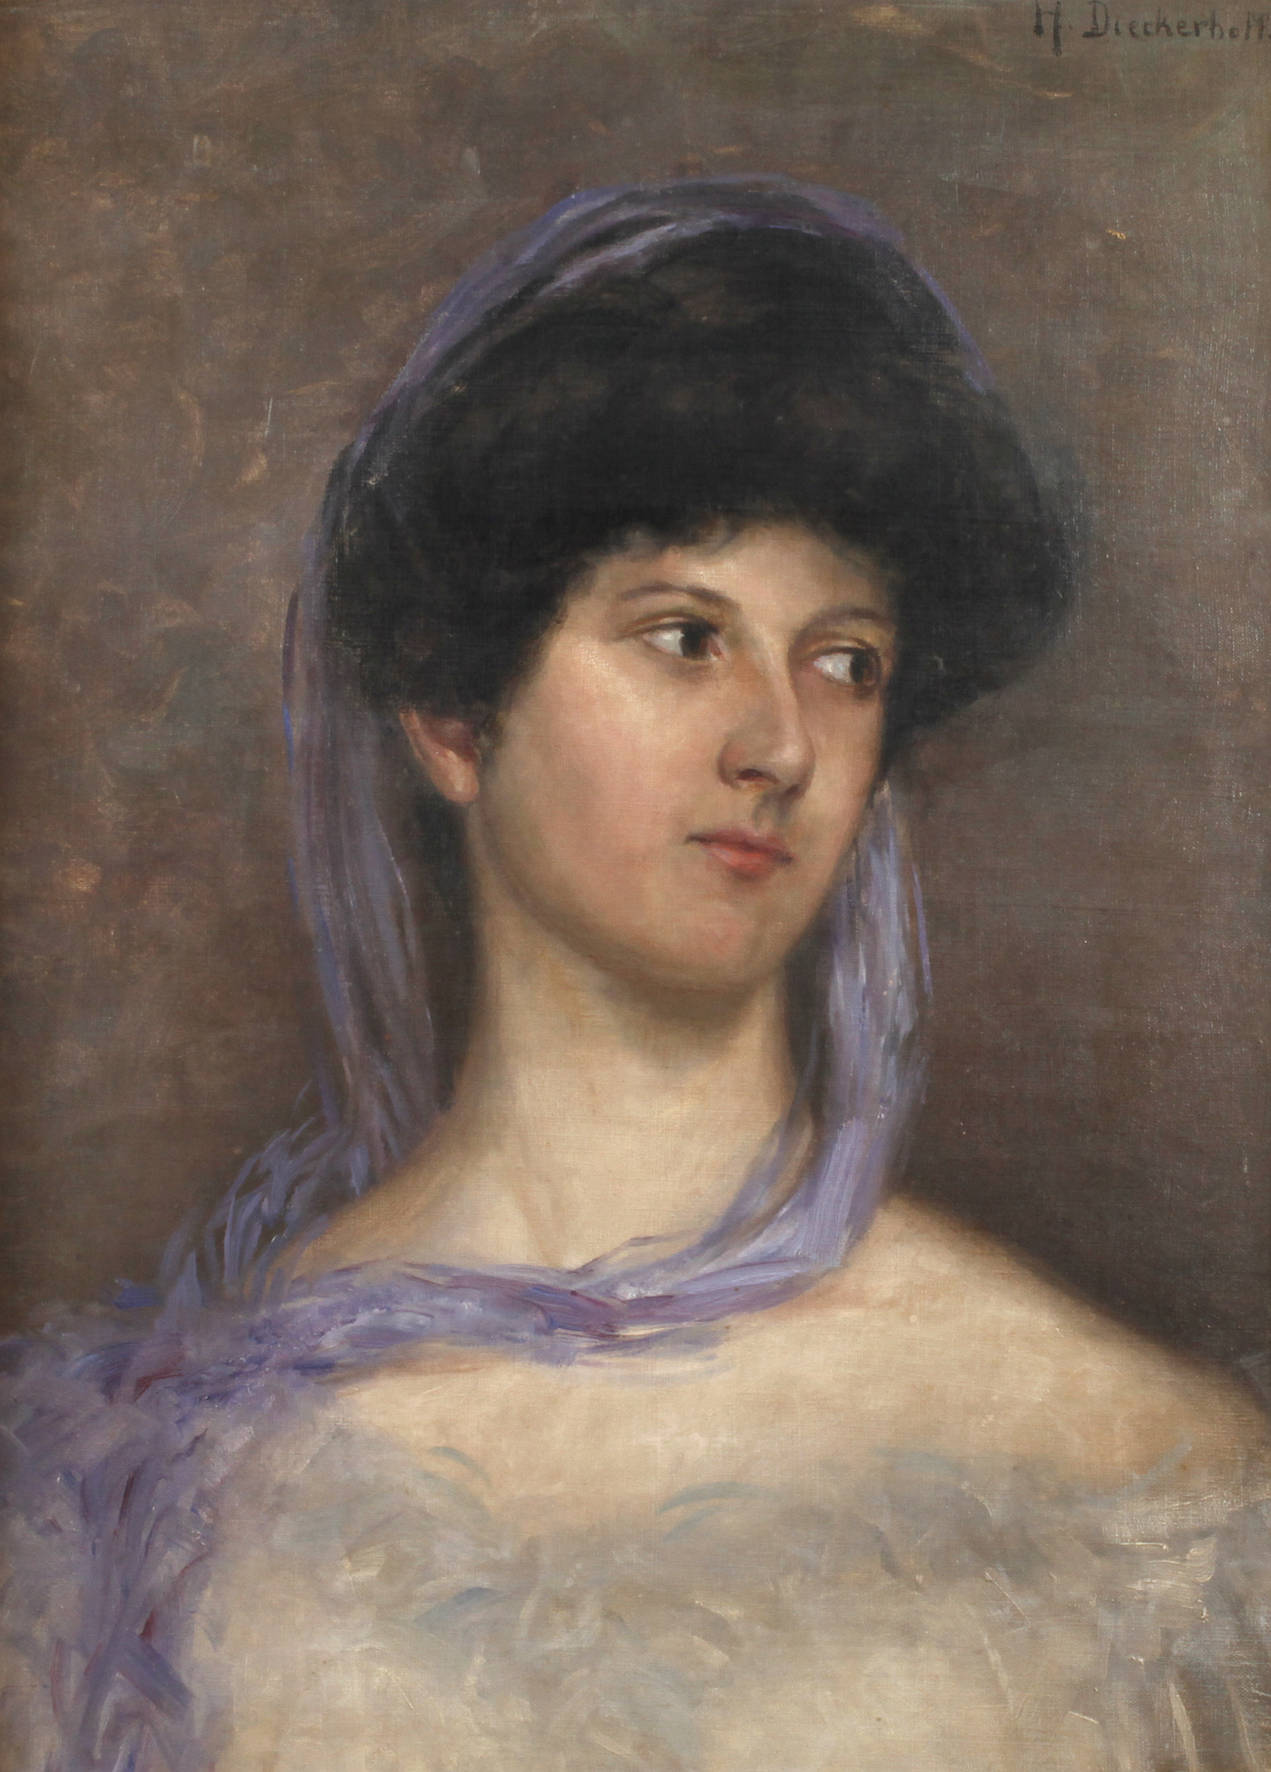 H. Dieckerhoff, Damenportrait